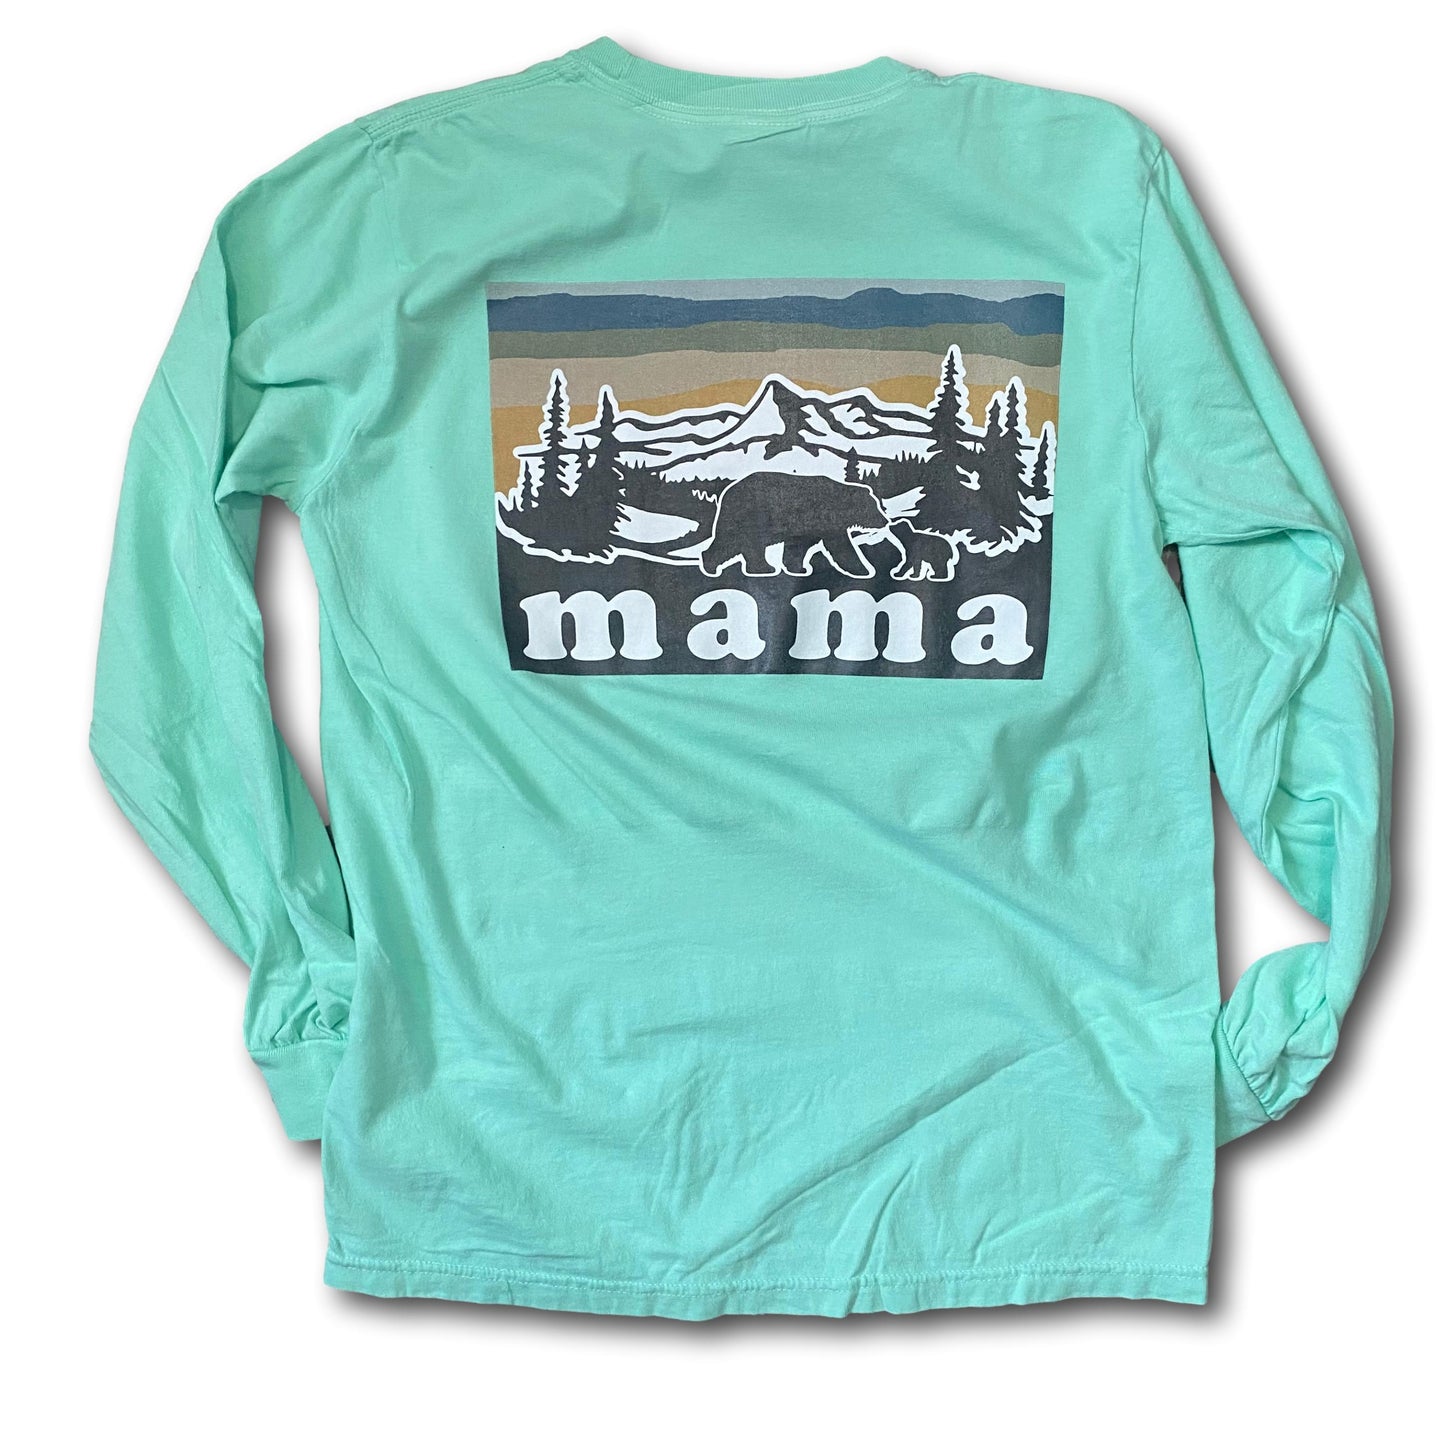 MAMA mountains - long sleeves - aqua